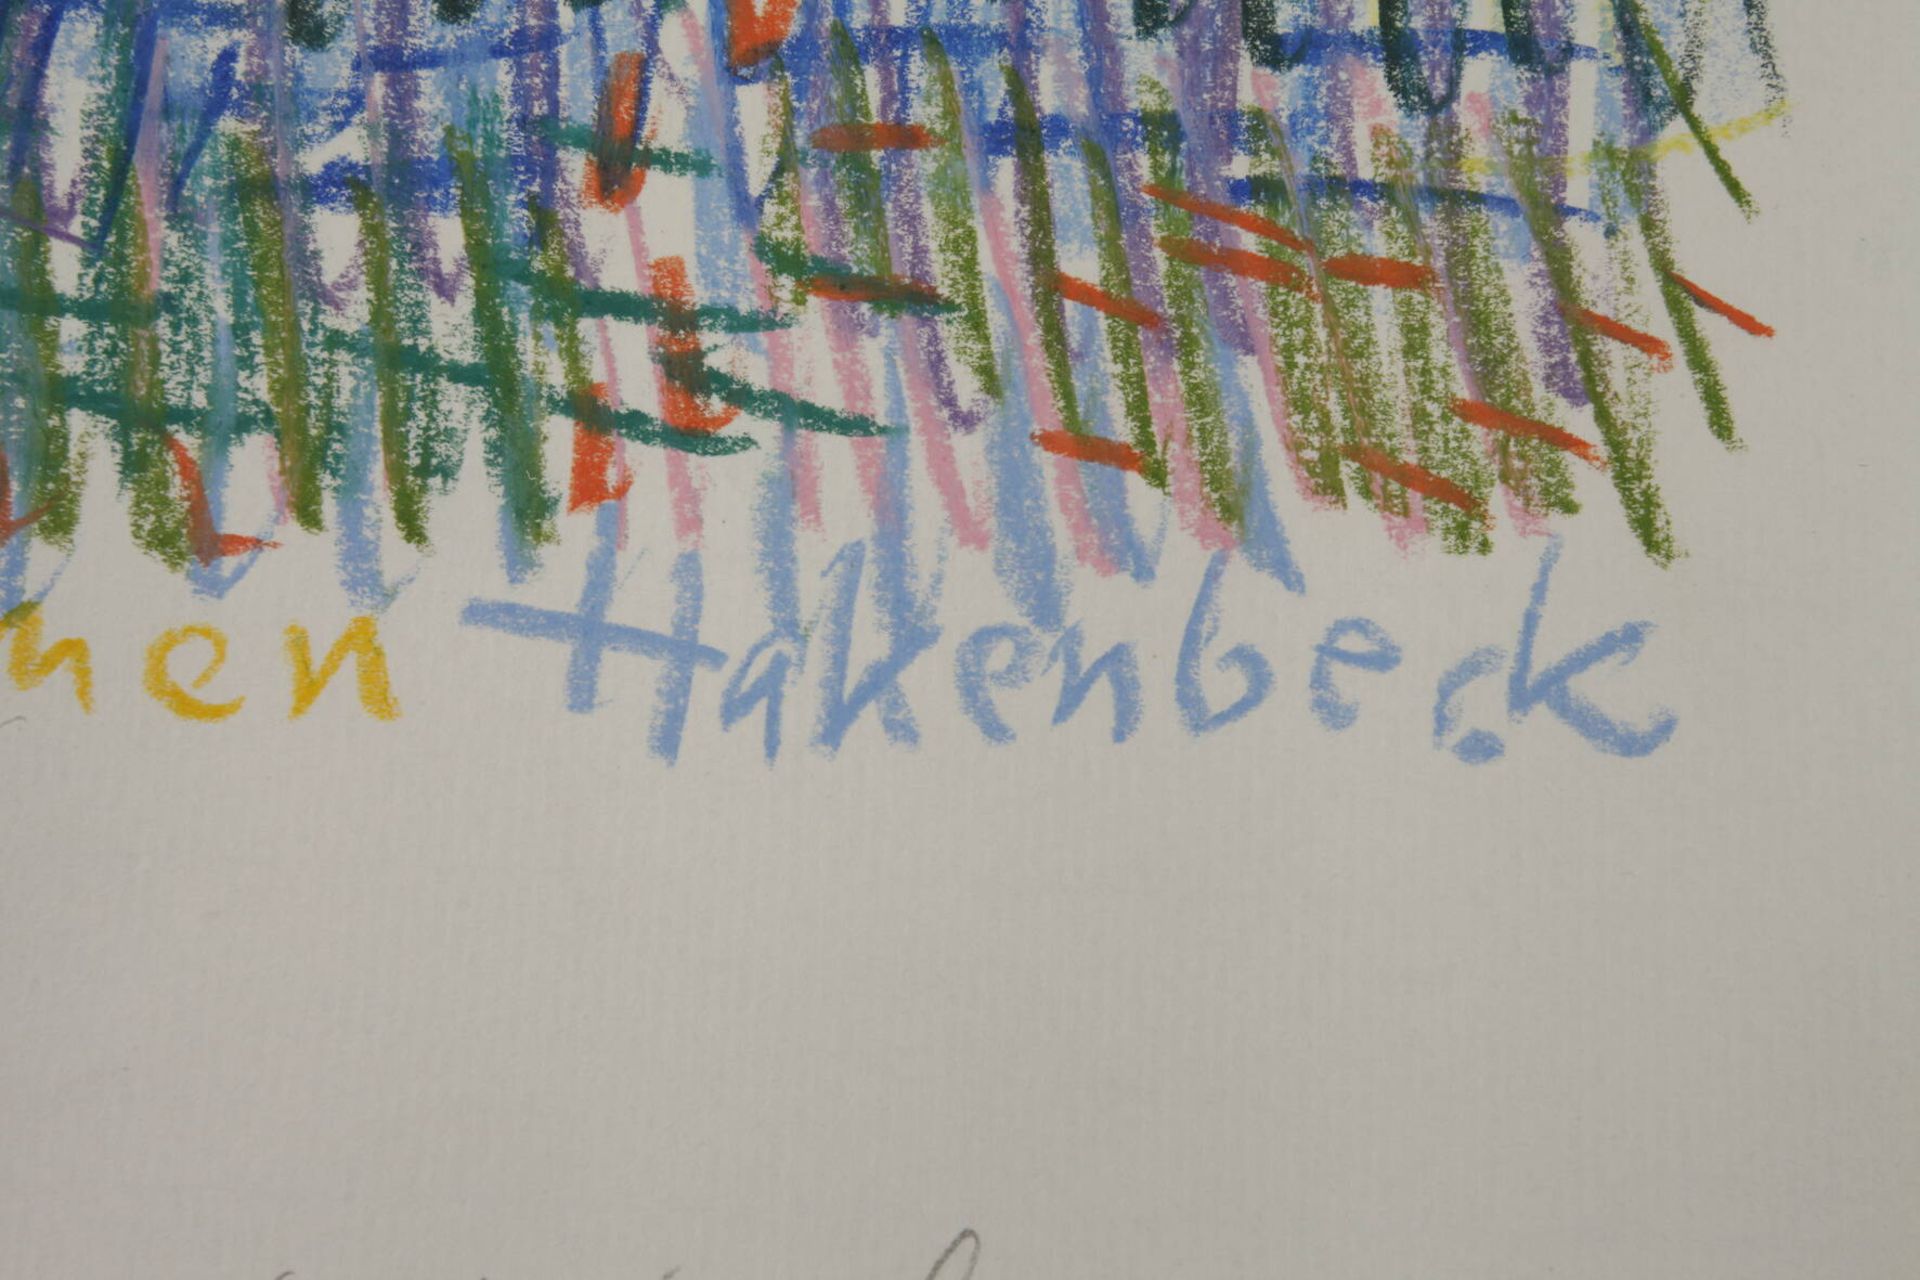 Harald Hakenbeck, "Häuser zwischen Bäumen" - Image 3 of 3